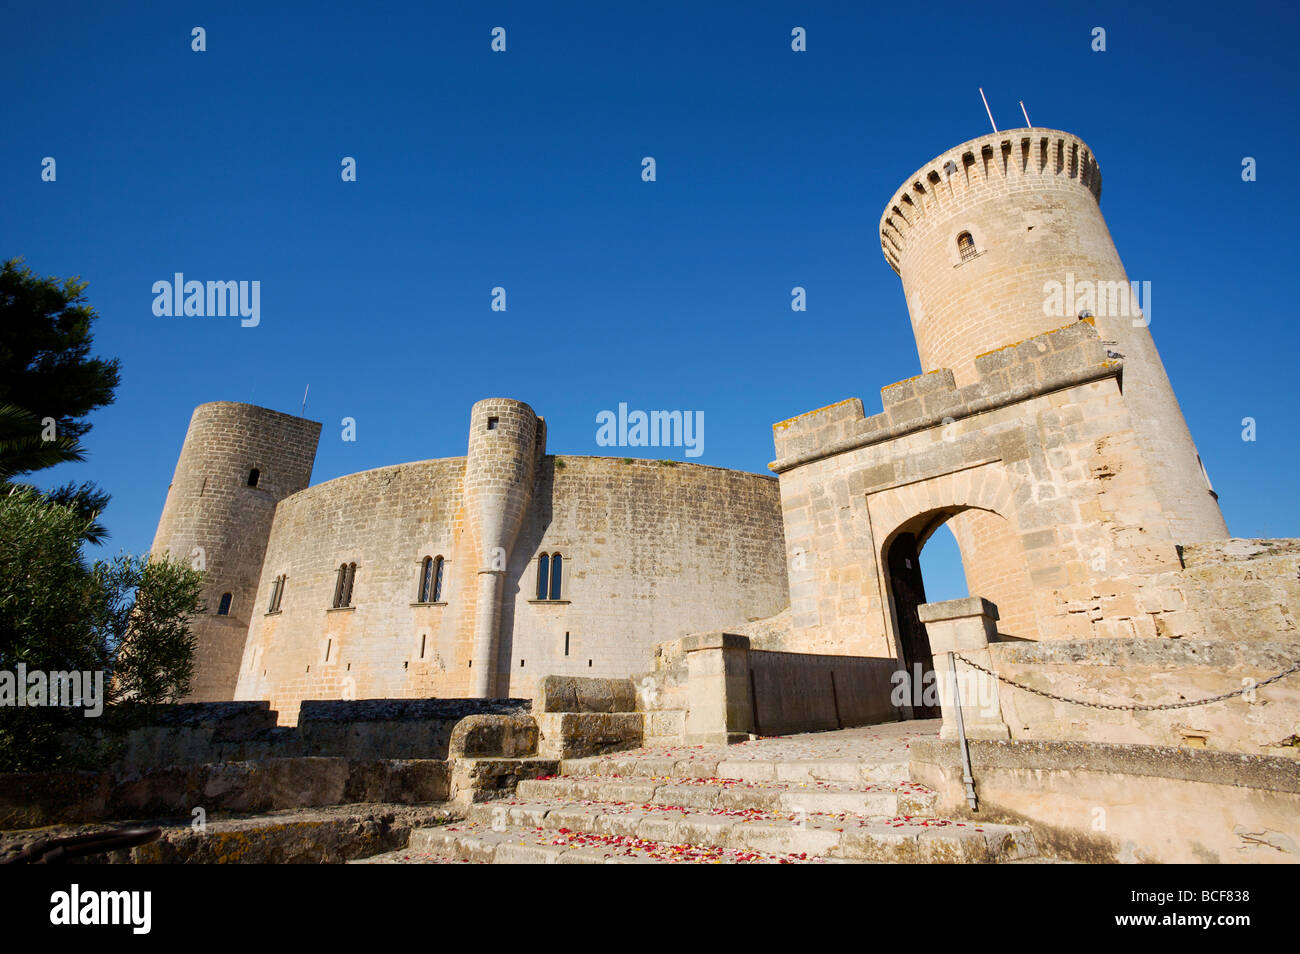 Castell de Bellver, Palma, Mallorca, Spain Stock Photo